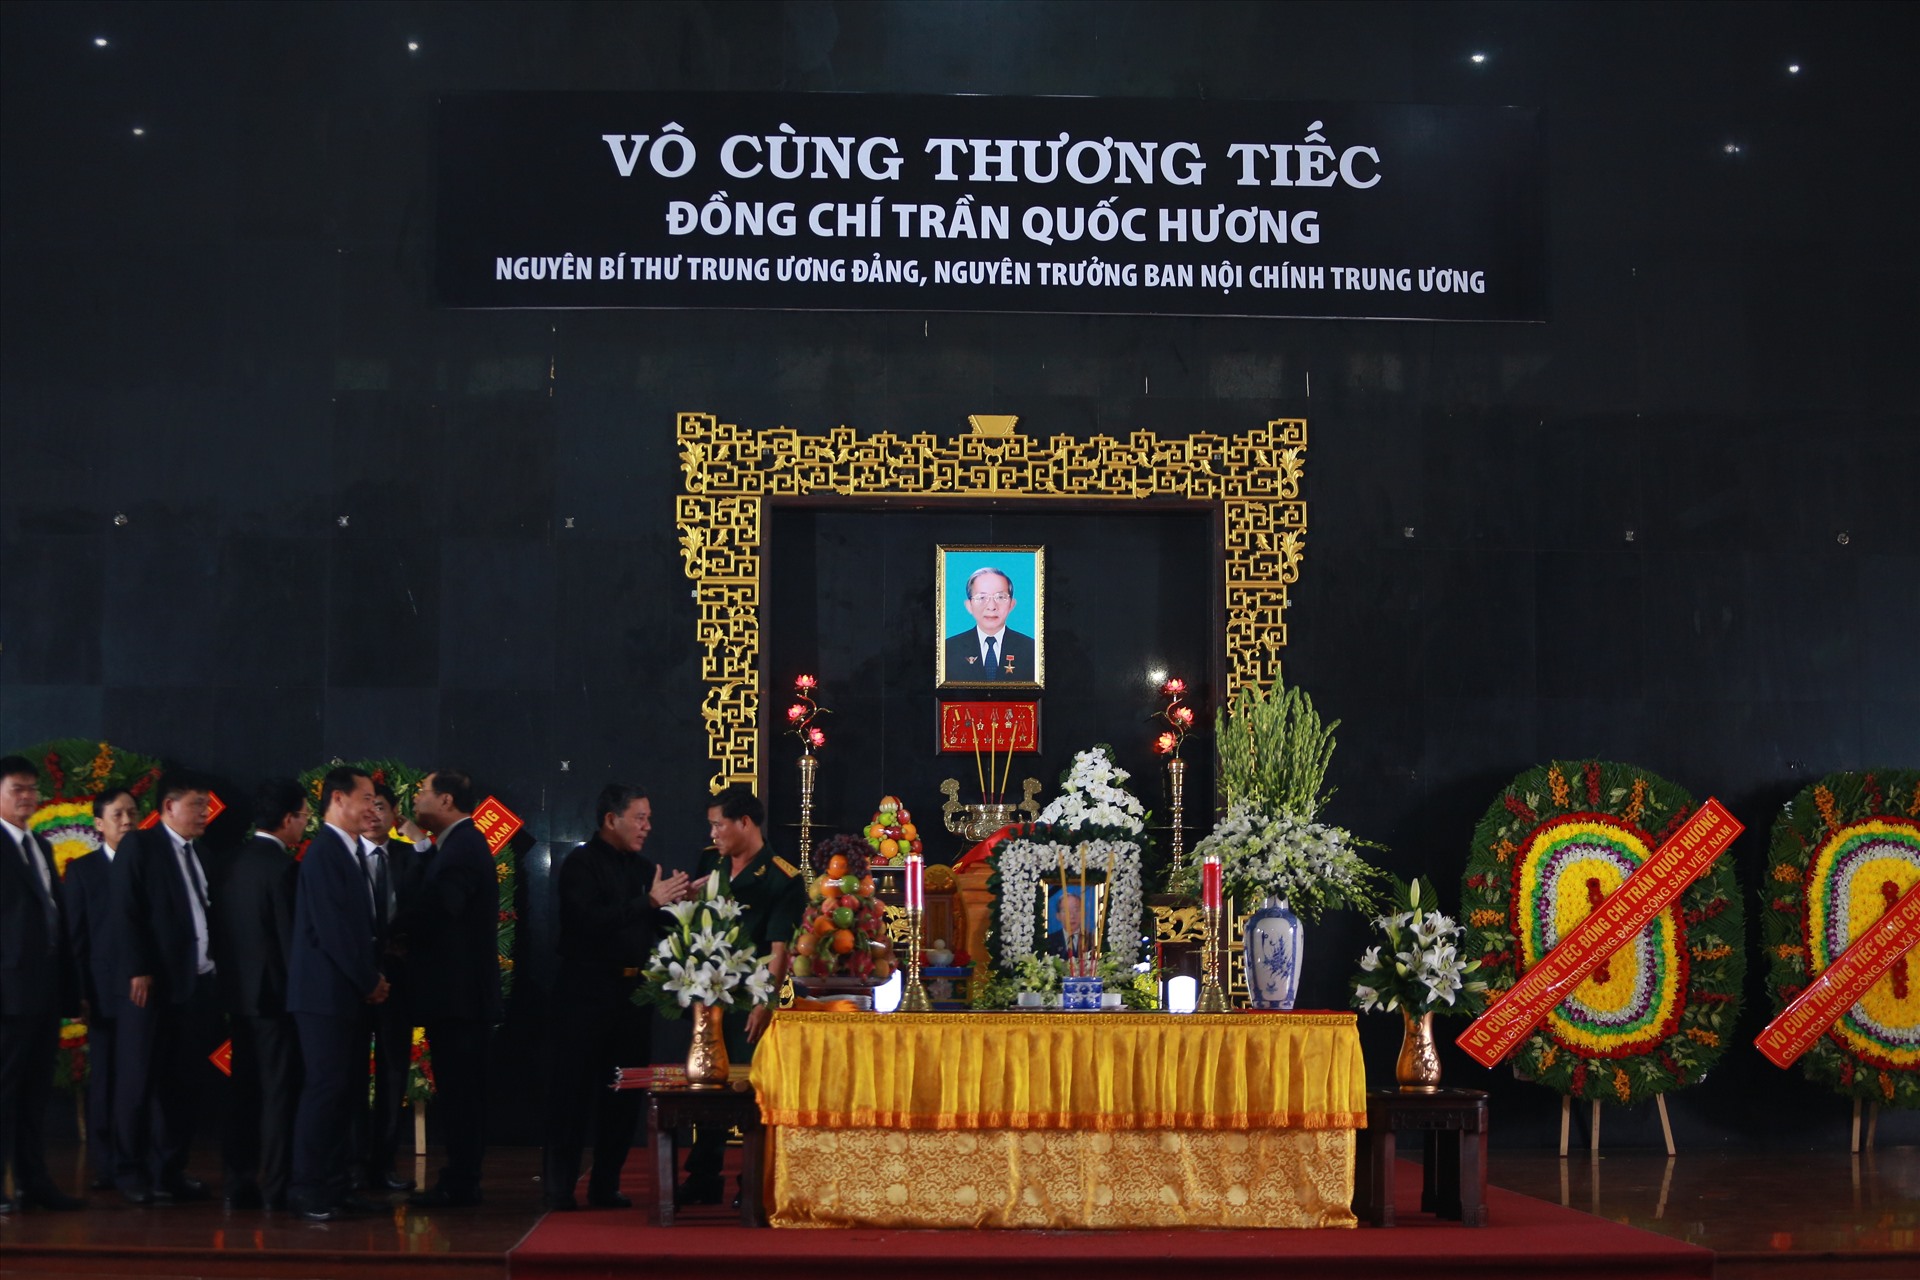 14h ngày 15/6, lễ tang ông Trần Quốc Hương, nguyên Bí thư Trung ương Đảng, nguyên Trưởng Ban Nội chính Trung ương đã được tổ chức tại Nhà Tang lễ quốc gia phía Nam.